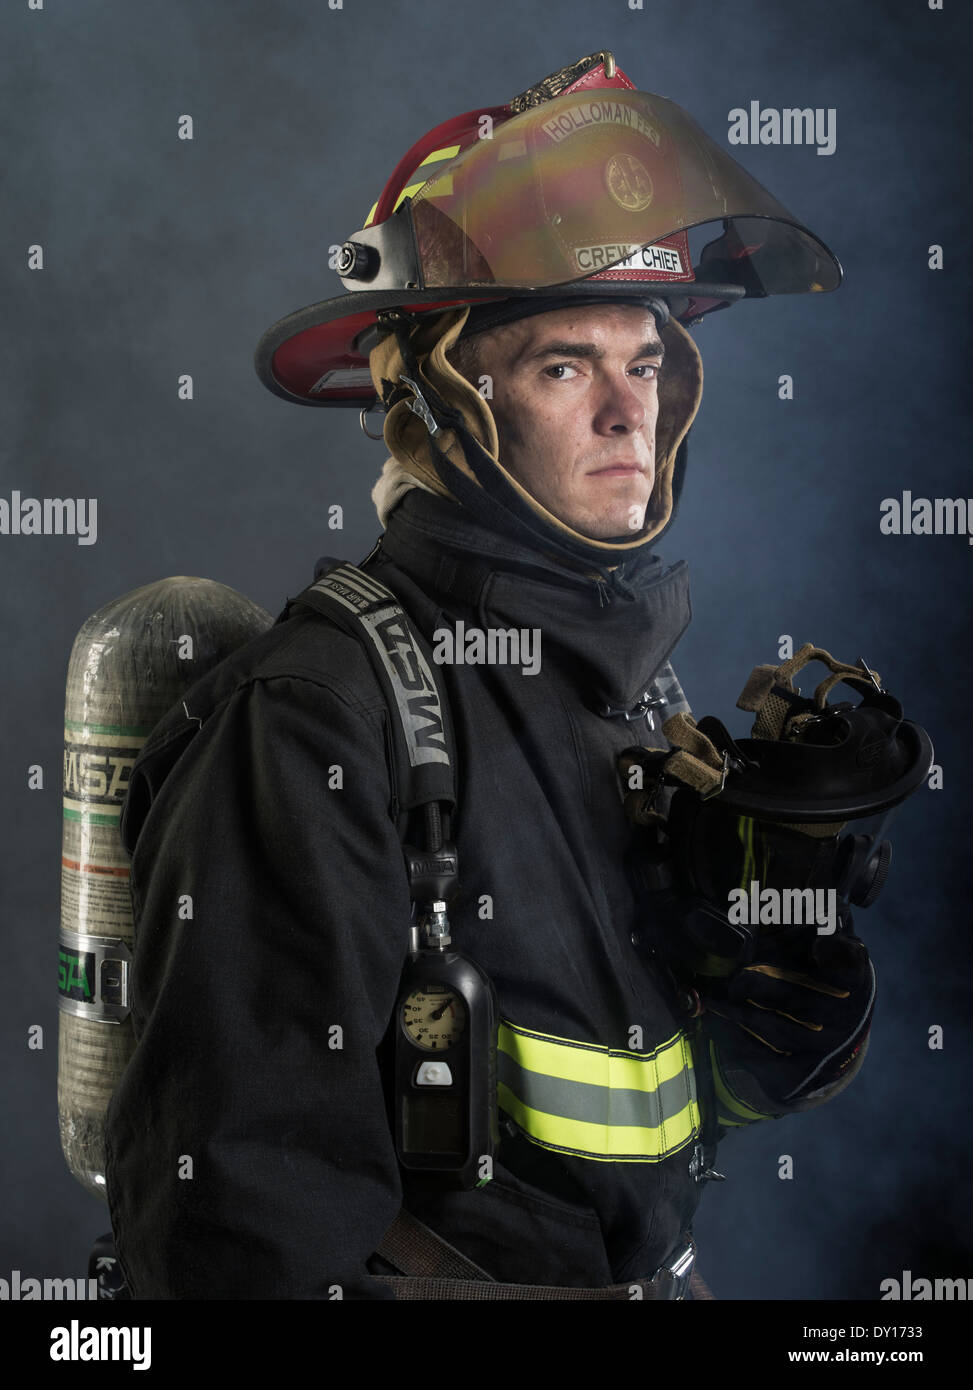 Firefighter maschio in estinzione strutturali uniforme con apparato di respirazione e ax Foto Stock